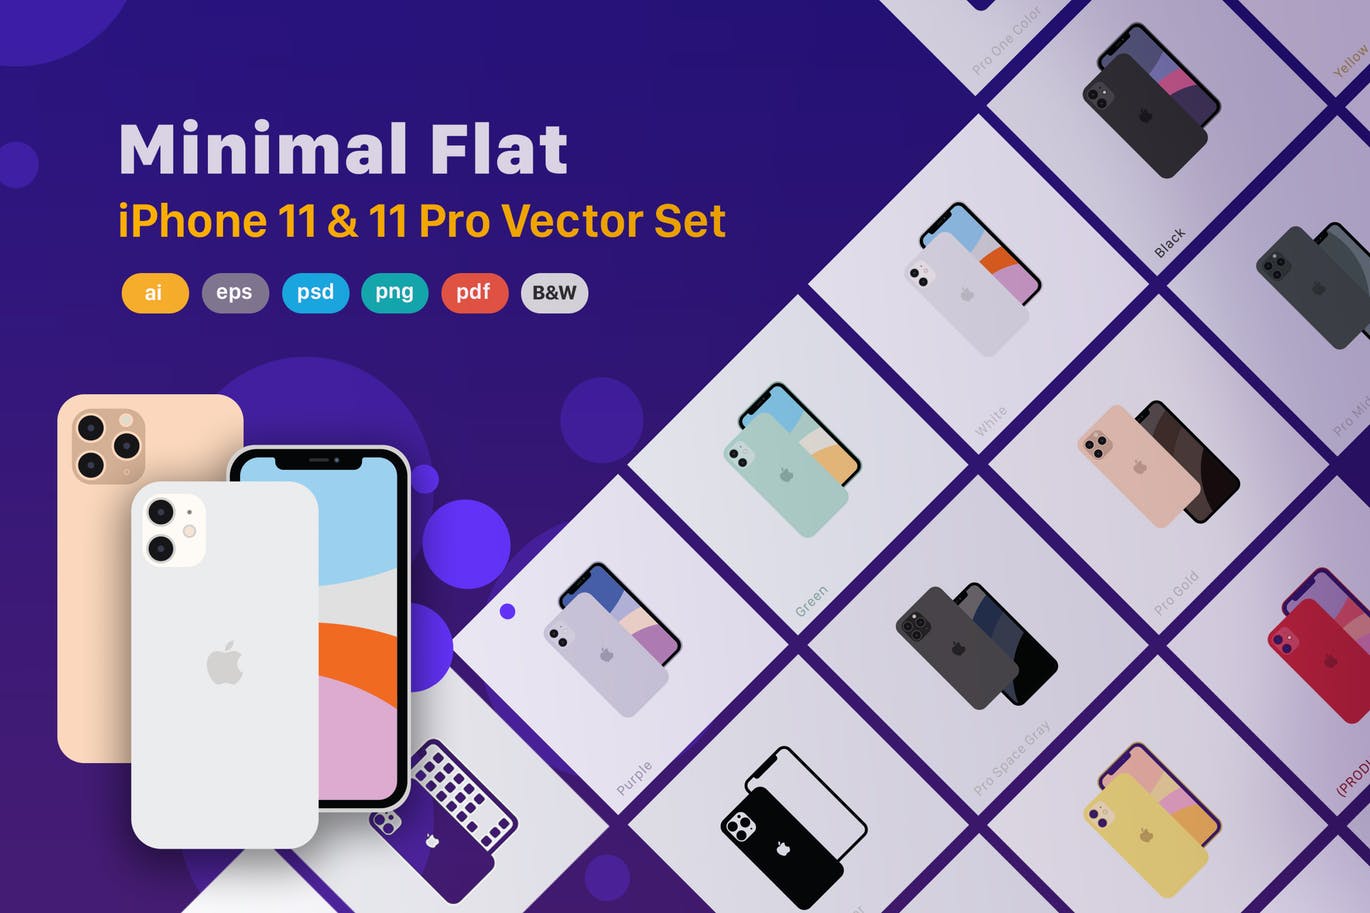 极简设计风格线条填充iPhone 11/11 Pro矢量图形设计素材 Minimal Flat iPhone 11 & 11 Pro Vector Set插图